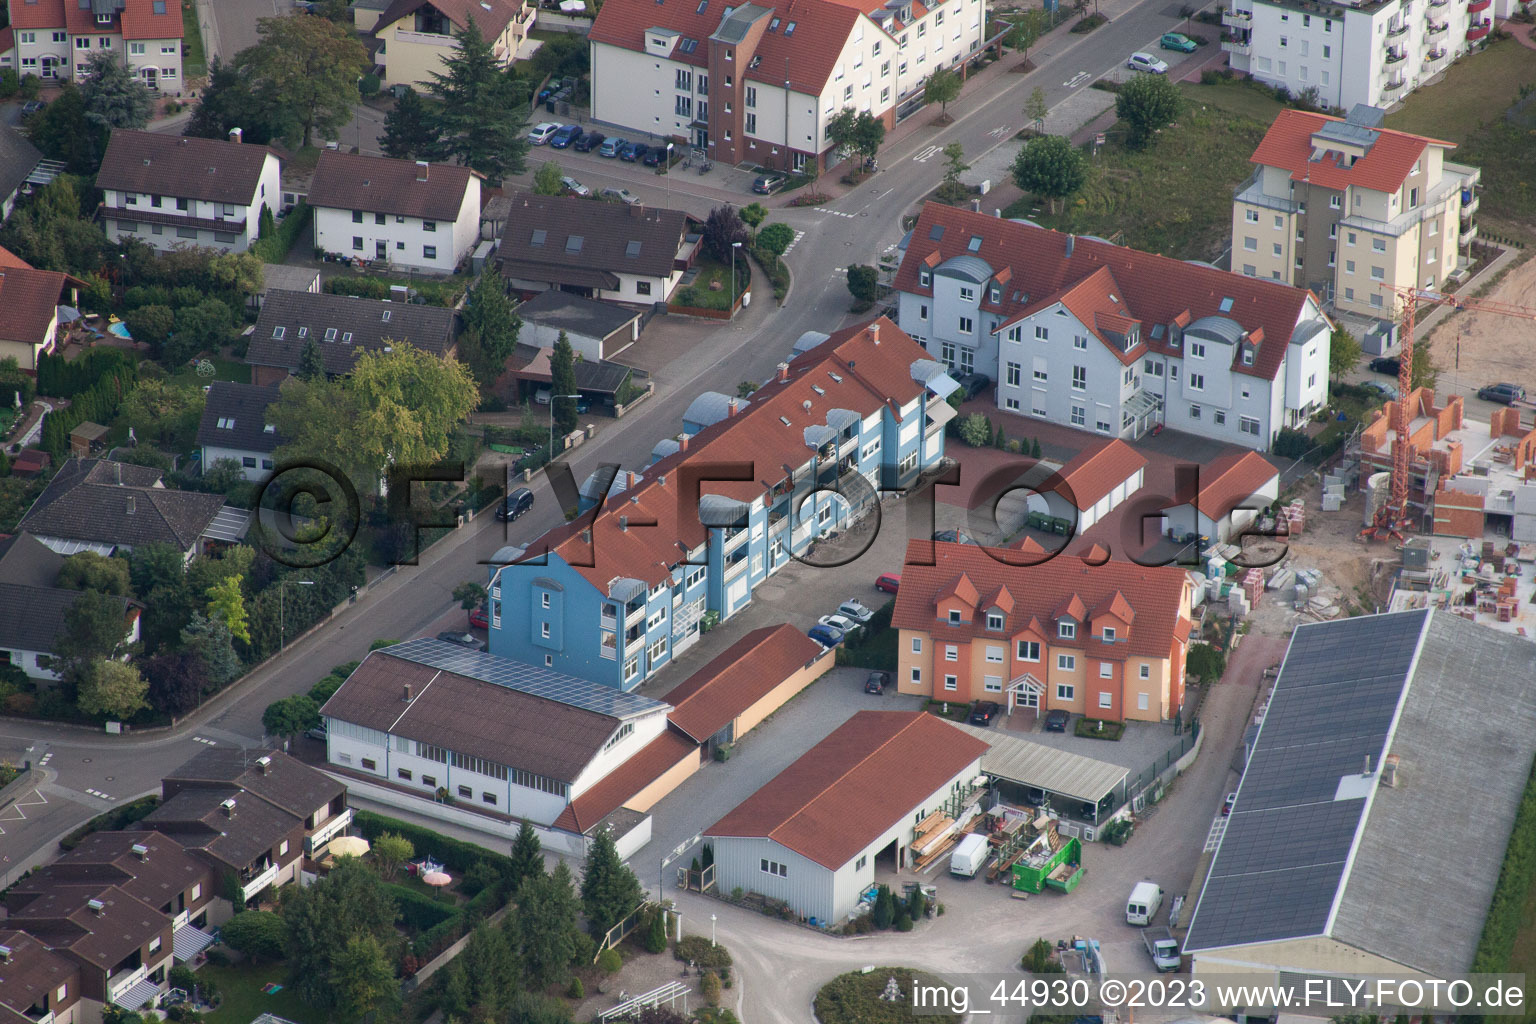 Jockgrim im Bundesland Rheinland-Pfalz, Deutschland von oben gesehen